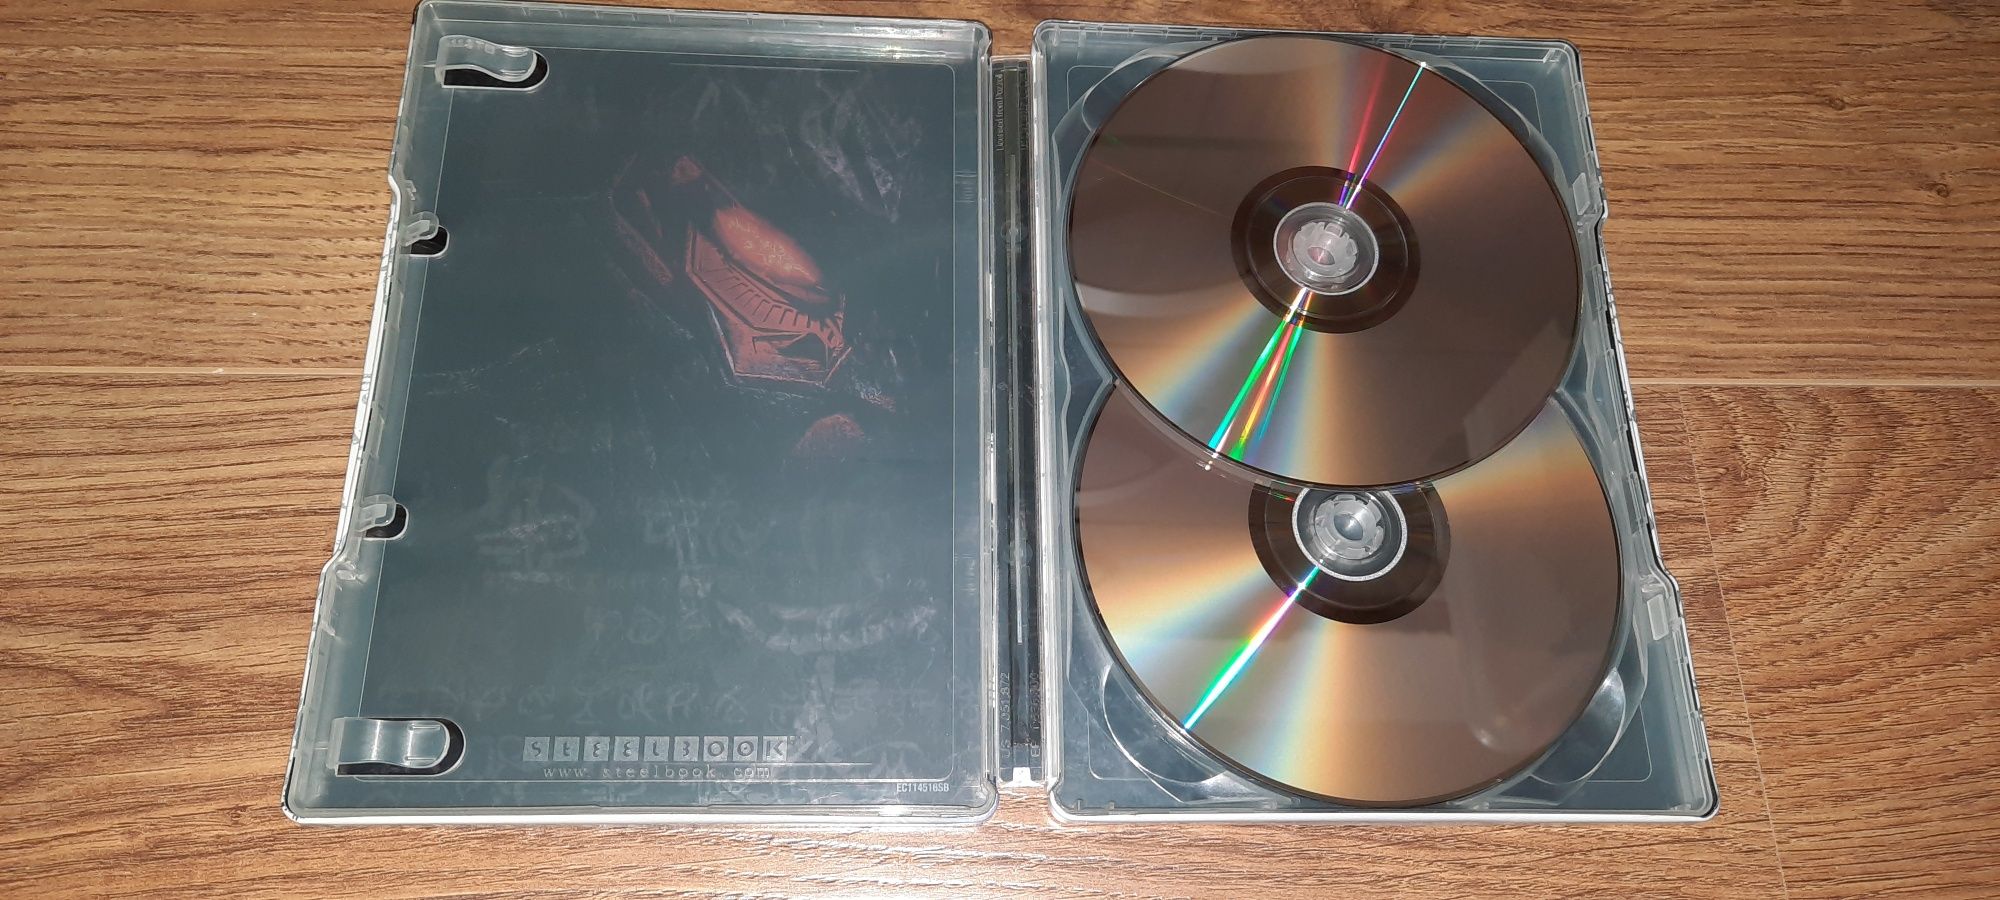 Steelbook Transformers 2 Revenge of The Fallen DVD  2 Disc SE